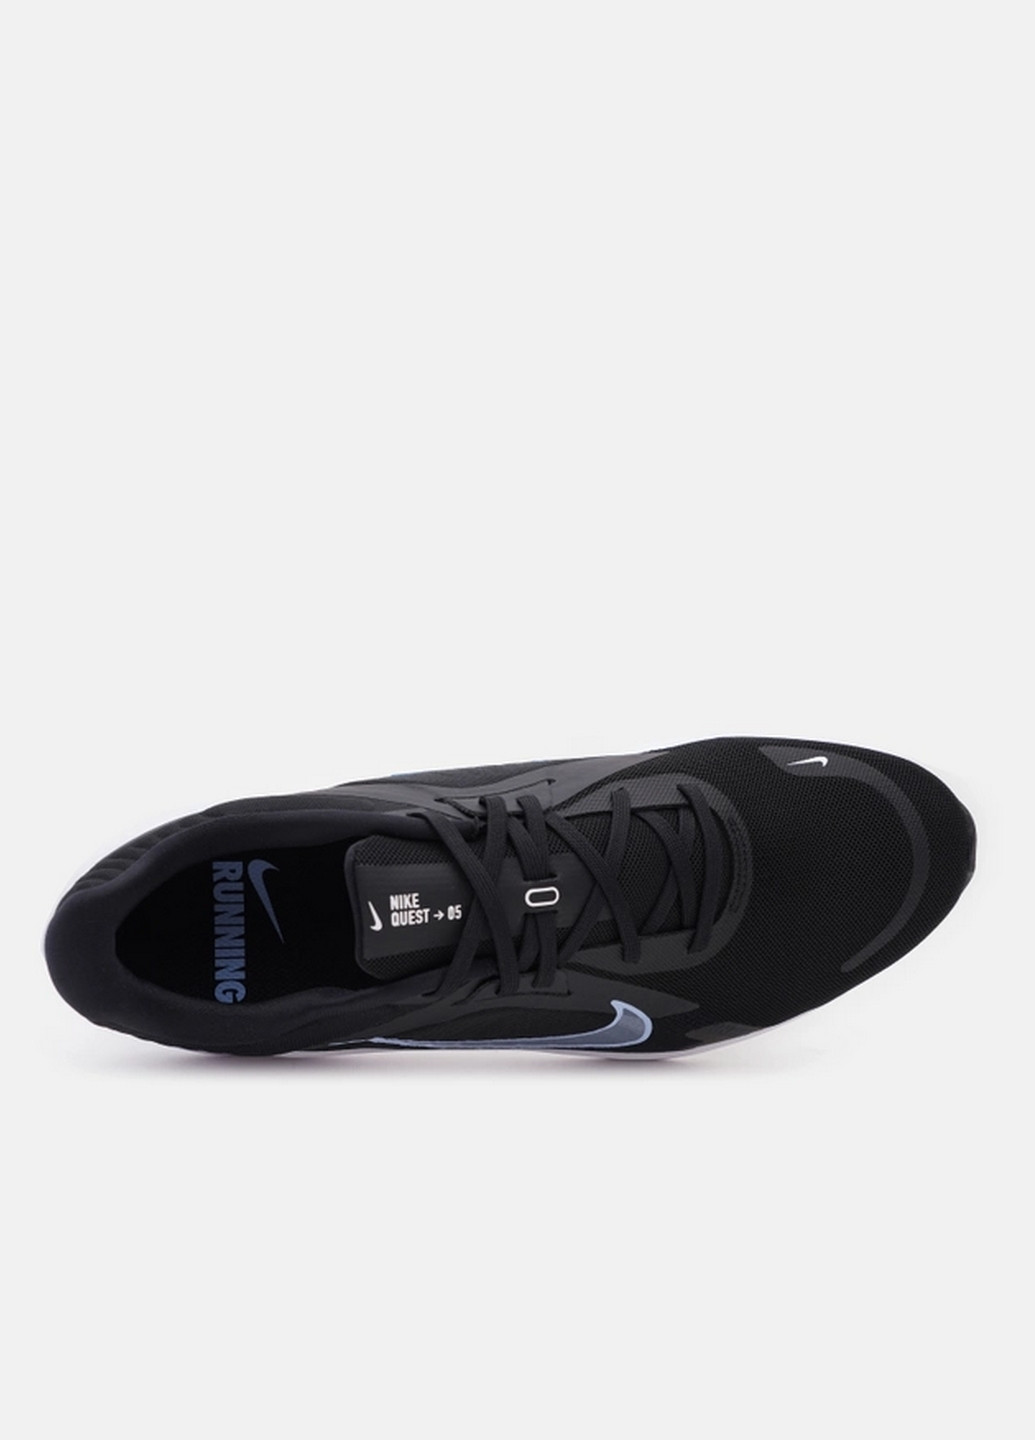 Черные демисезонные мужские кроссовки Nike QUEST 5